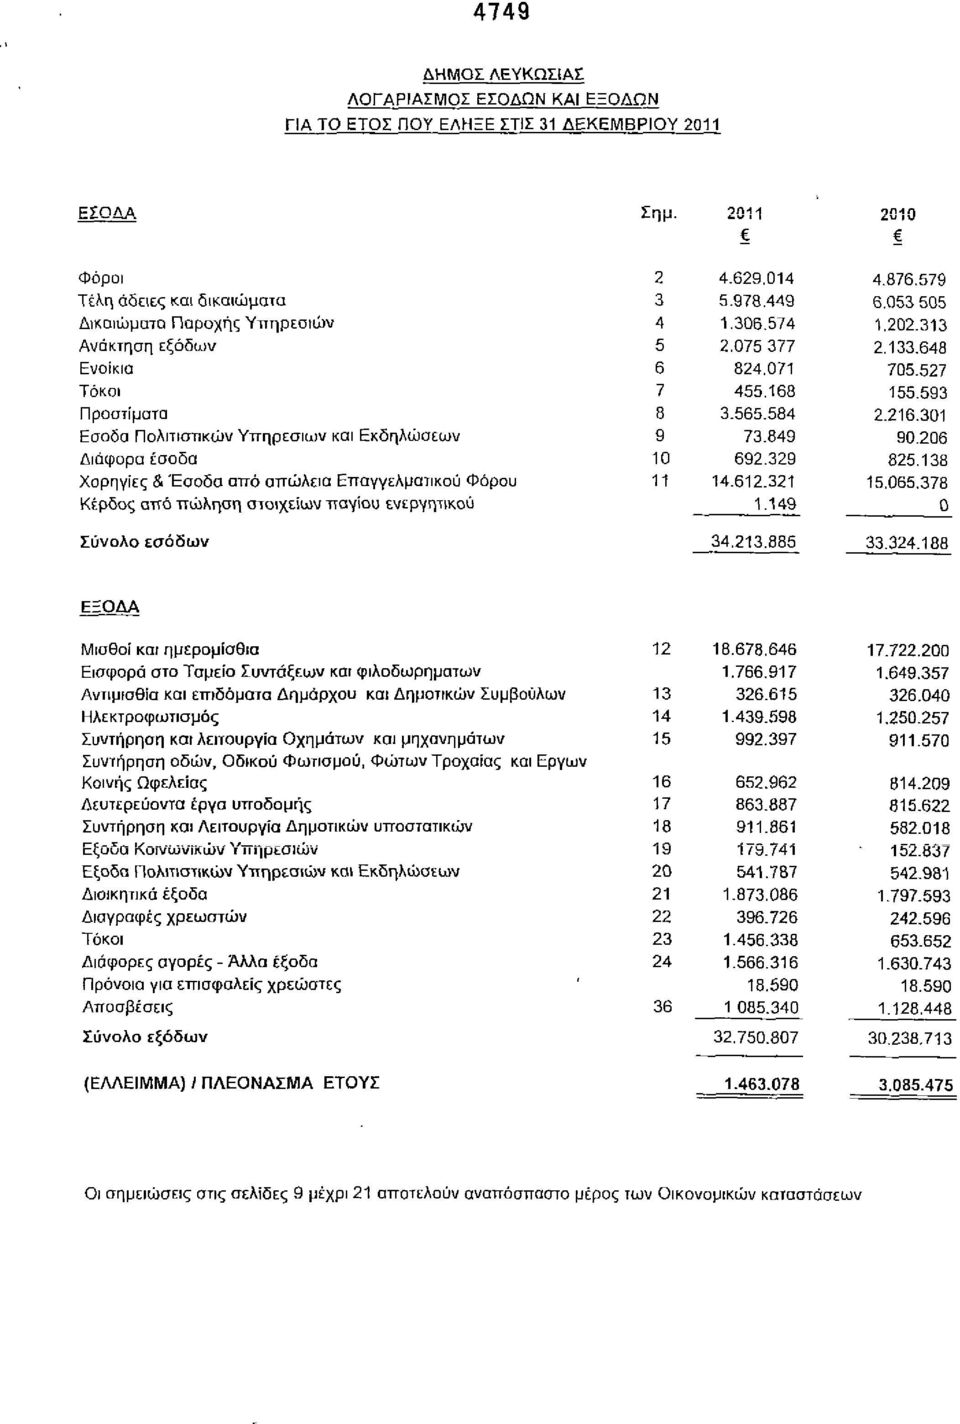 Πολιτιστικών Υπηρεσιών και Εκδηλώσεων Διάφορα έσοδα Χορηγίες & Έσοδα από απώλεια Επαγγελματικού Φόρου Κέρδος από πώληση στοιχείων παγίου ενεργητικού Σύνολο εσόδων ημ. 2011 2010 2 4.629.014 4.876.